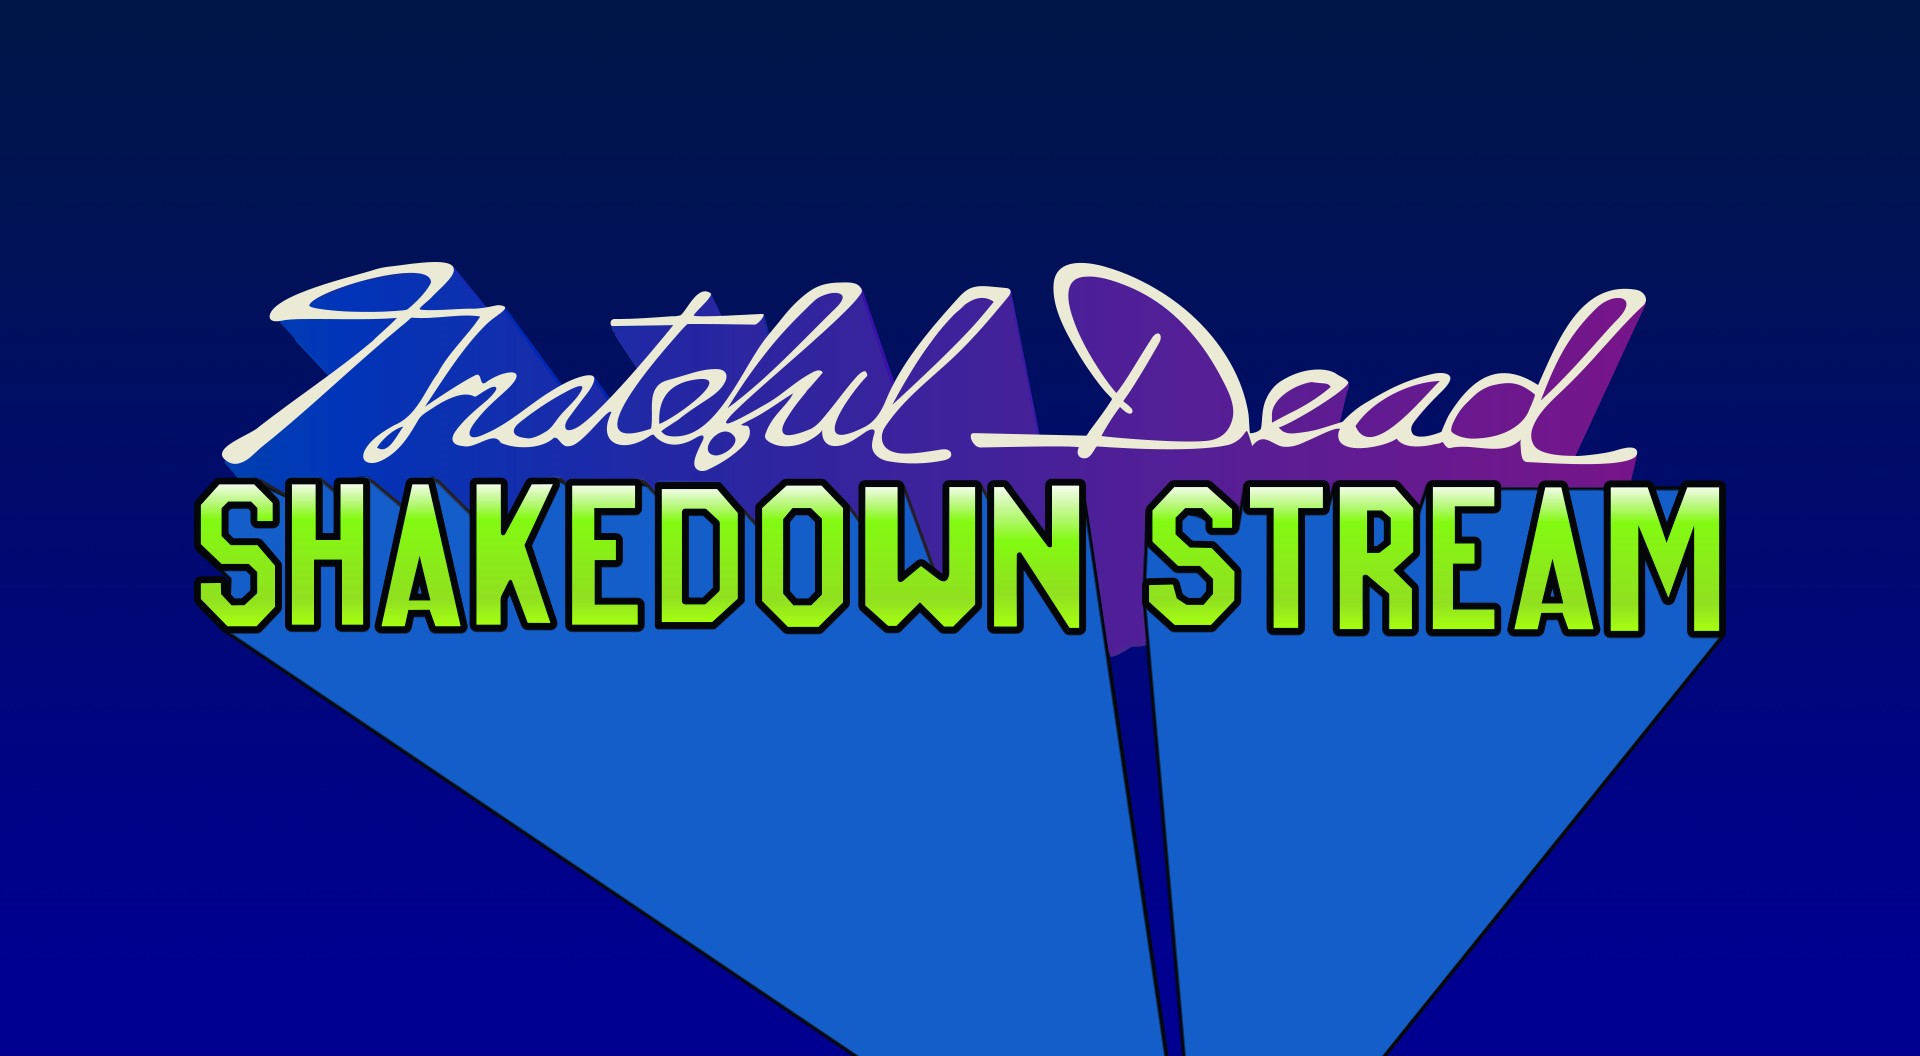 Shakedown Stream | Rhino Media